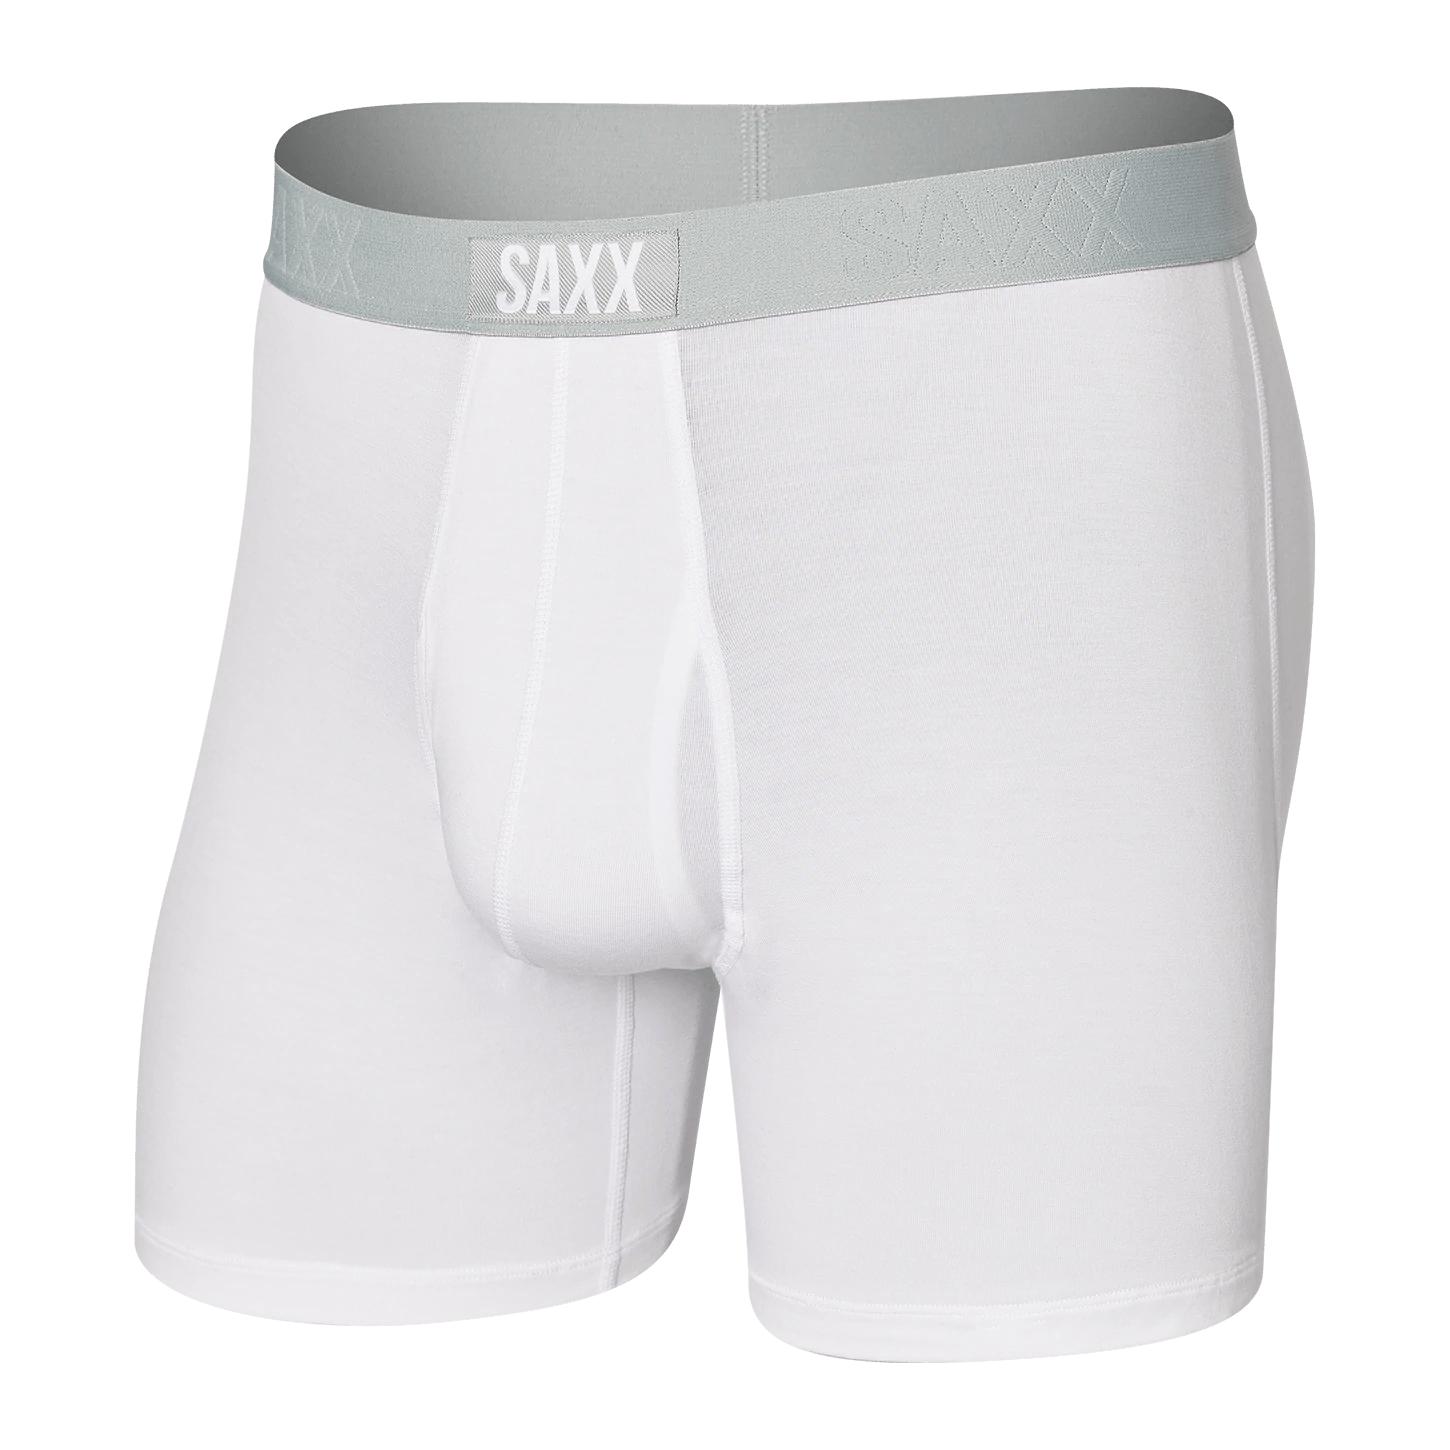 Saxx Kinetic Boxer Brief